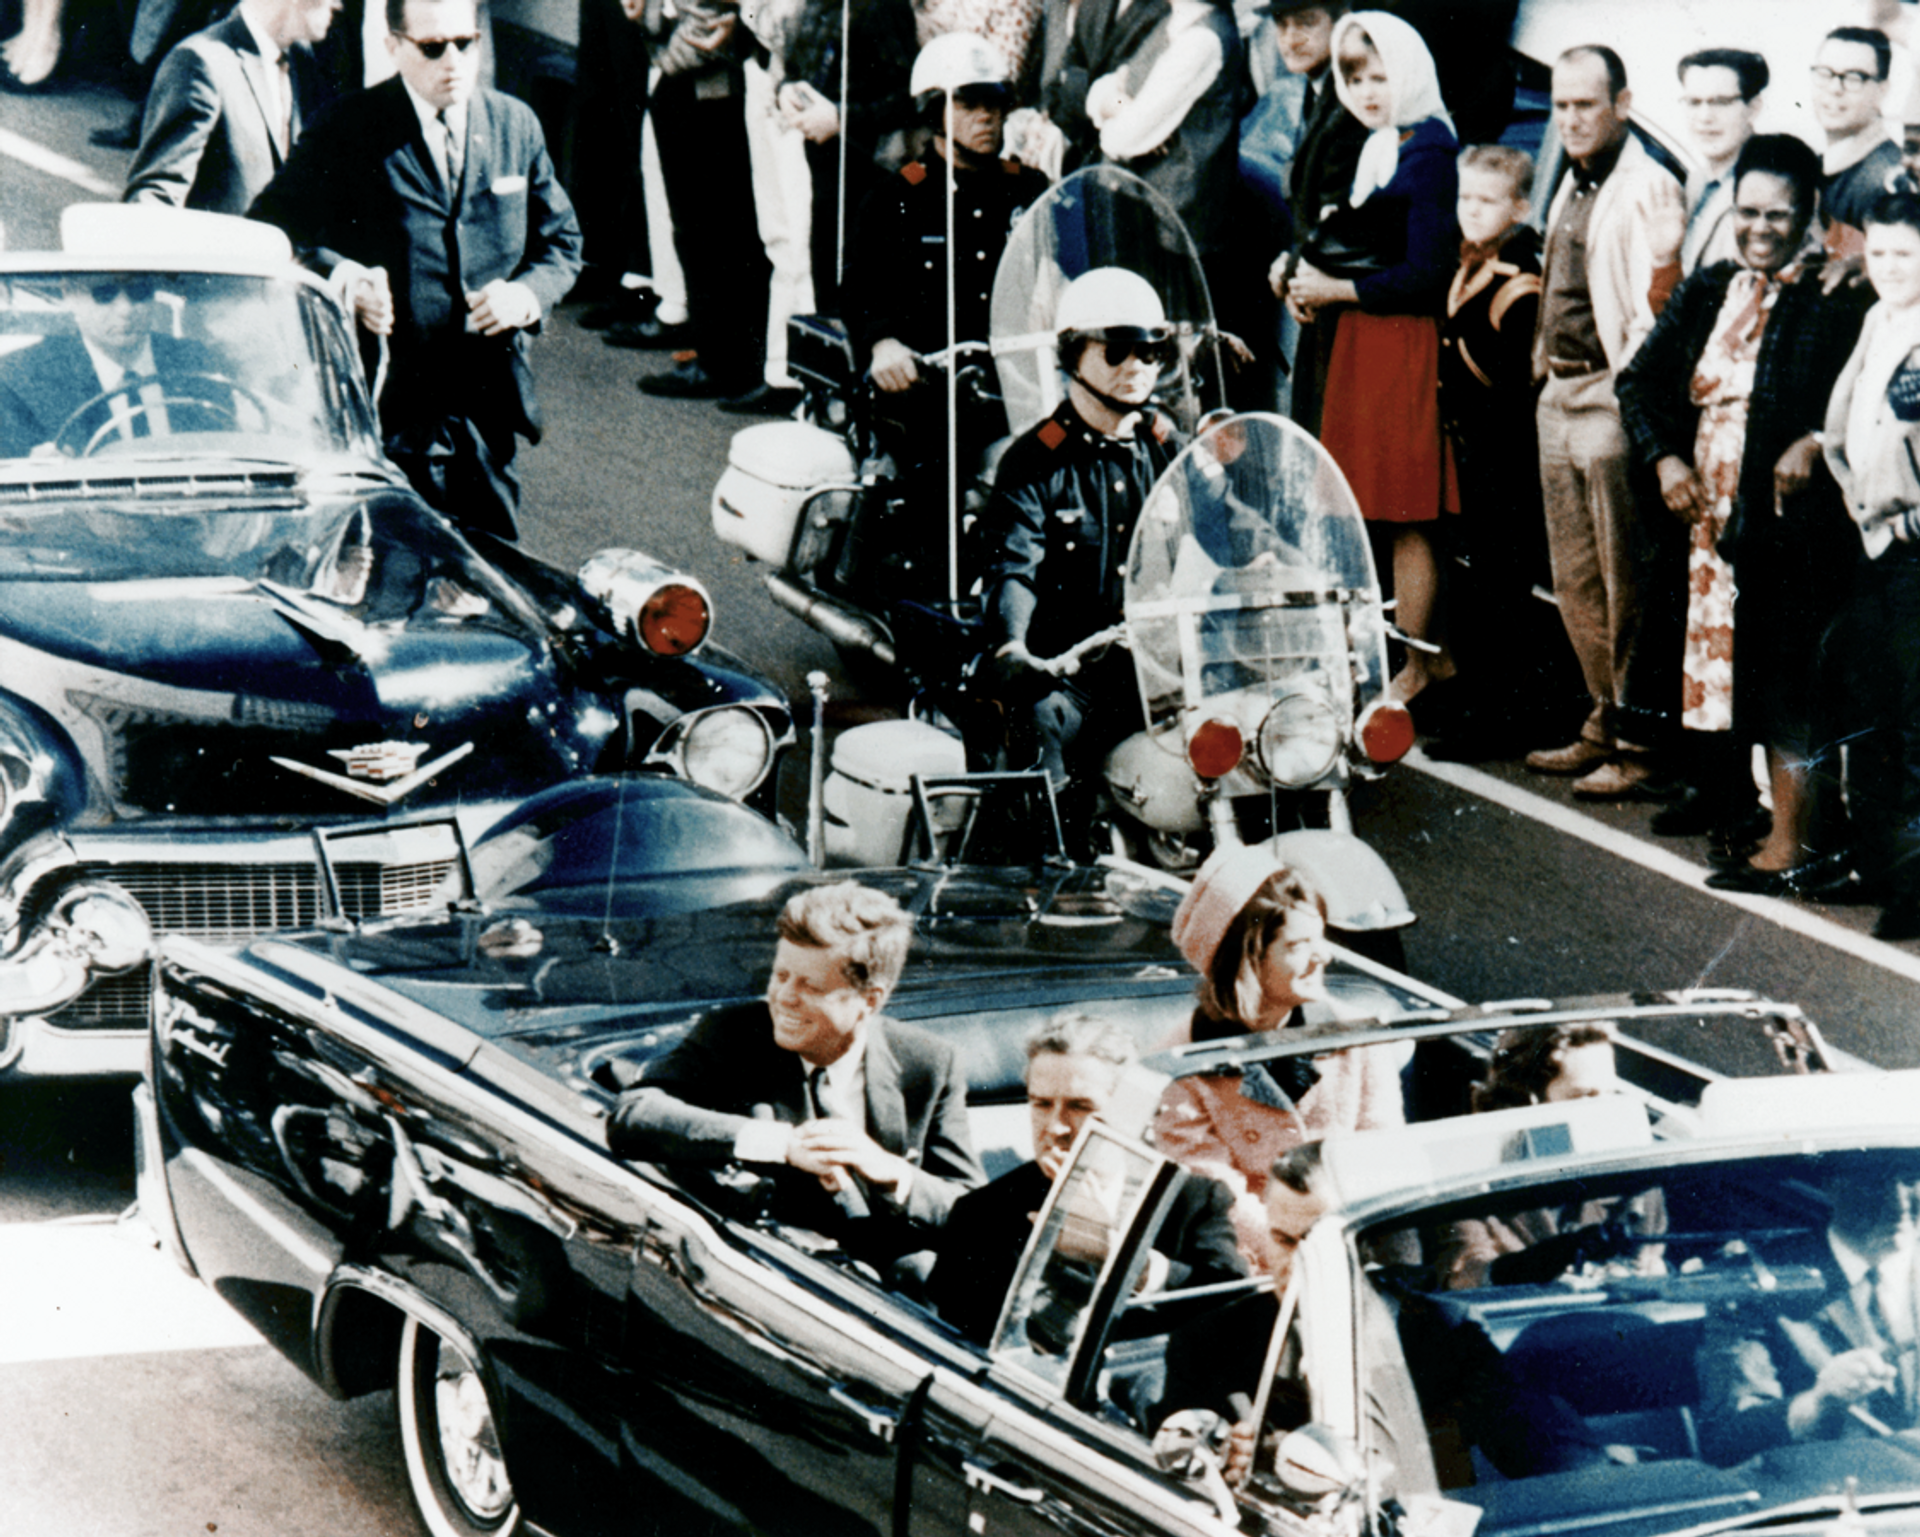 Председник САД Џон Ф. Кенеди у председничкој лимузини у Даласу 1963. неколико минута пре атентата. У возилу су и прва дама Џеки Кенеди, говернер Тексаса Џон Конали и његова жена Нели. - Sputnik Србија, 1920, 20.12.2021